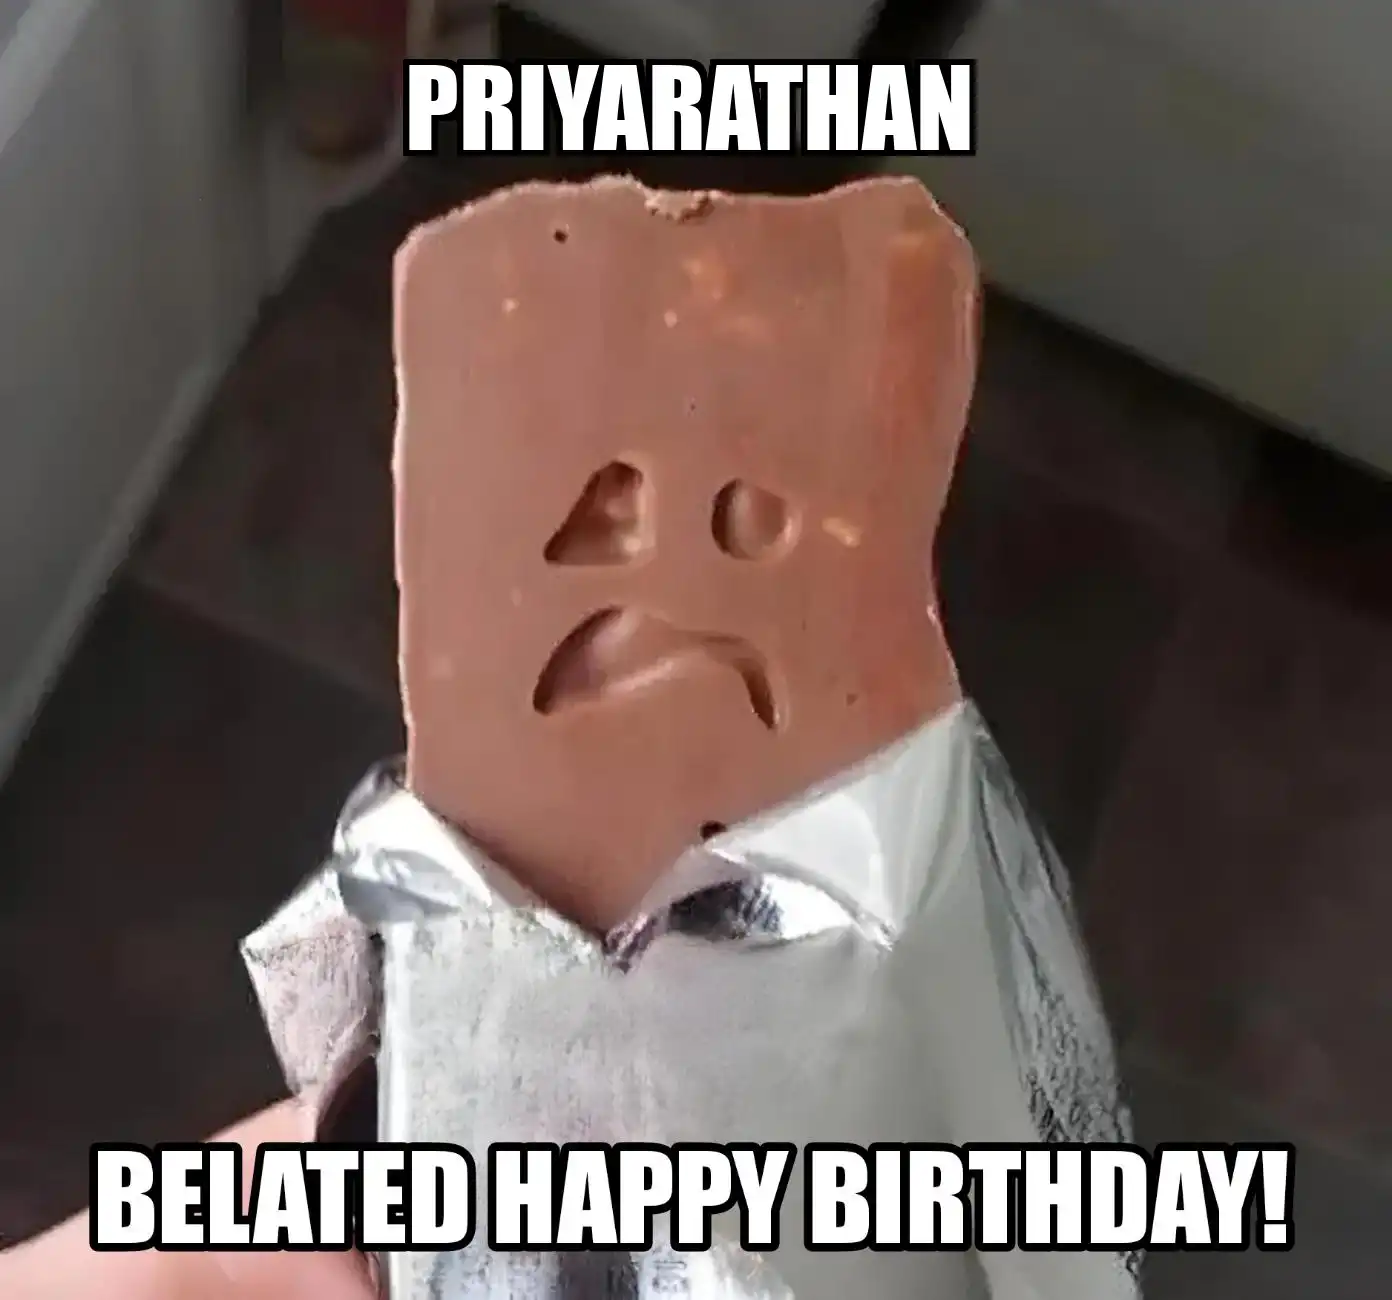 Happy Birthday Priyarathan Belated Happy Birthday Meme